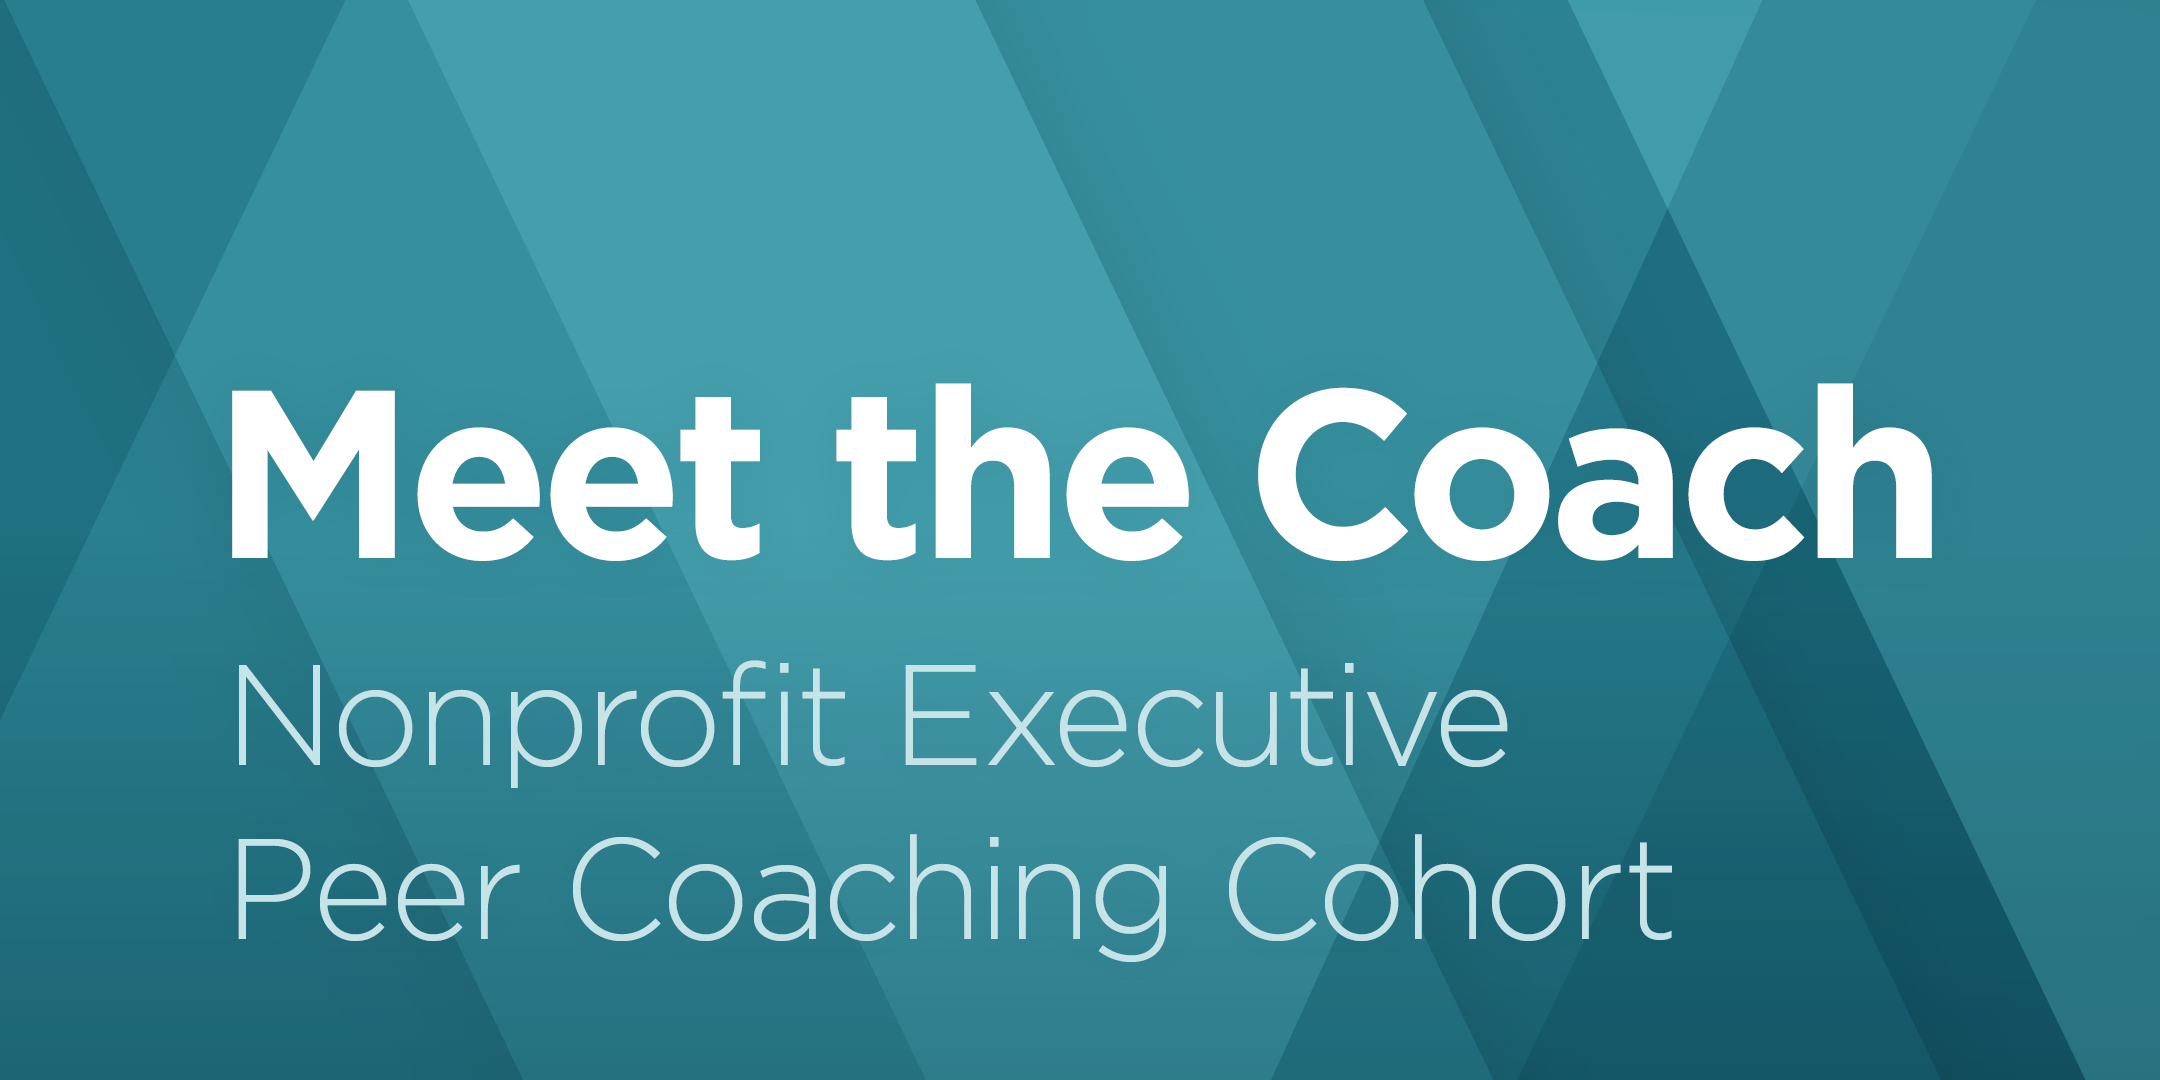 Meet the Coach: Nonprofit Executive Peer Coaching Cohort